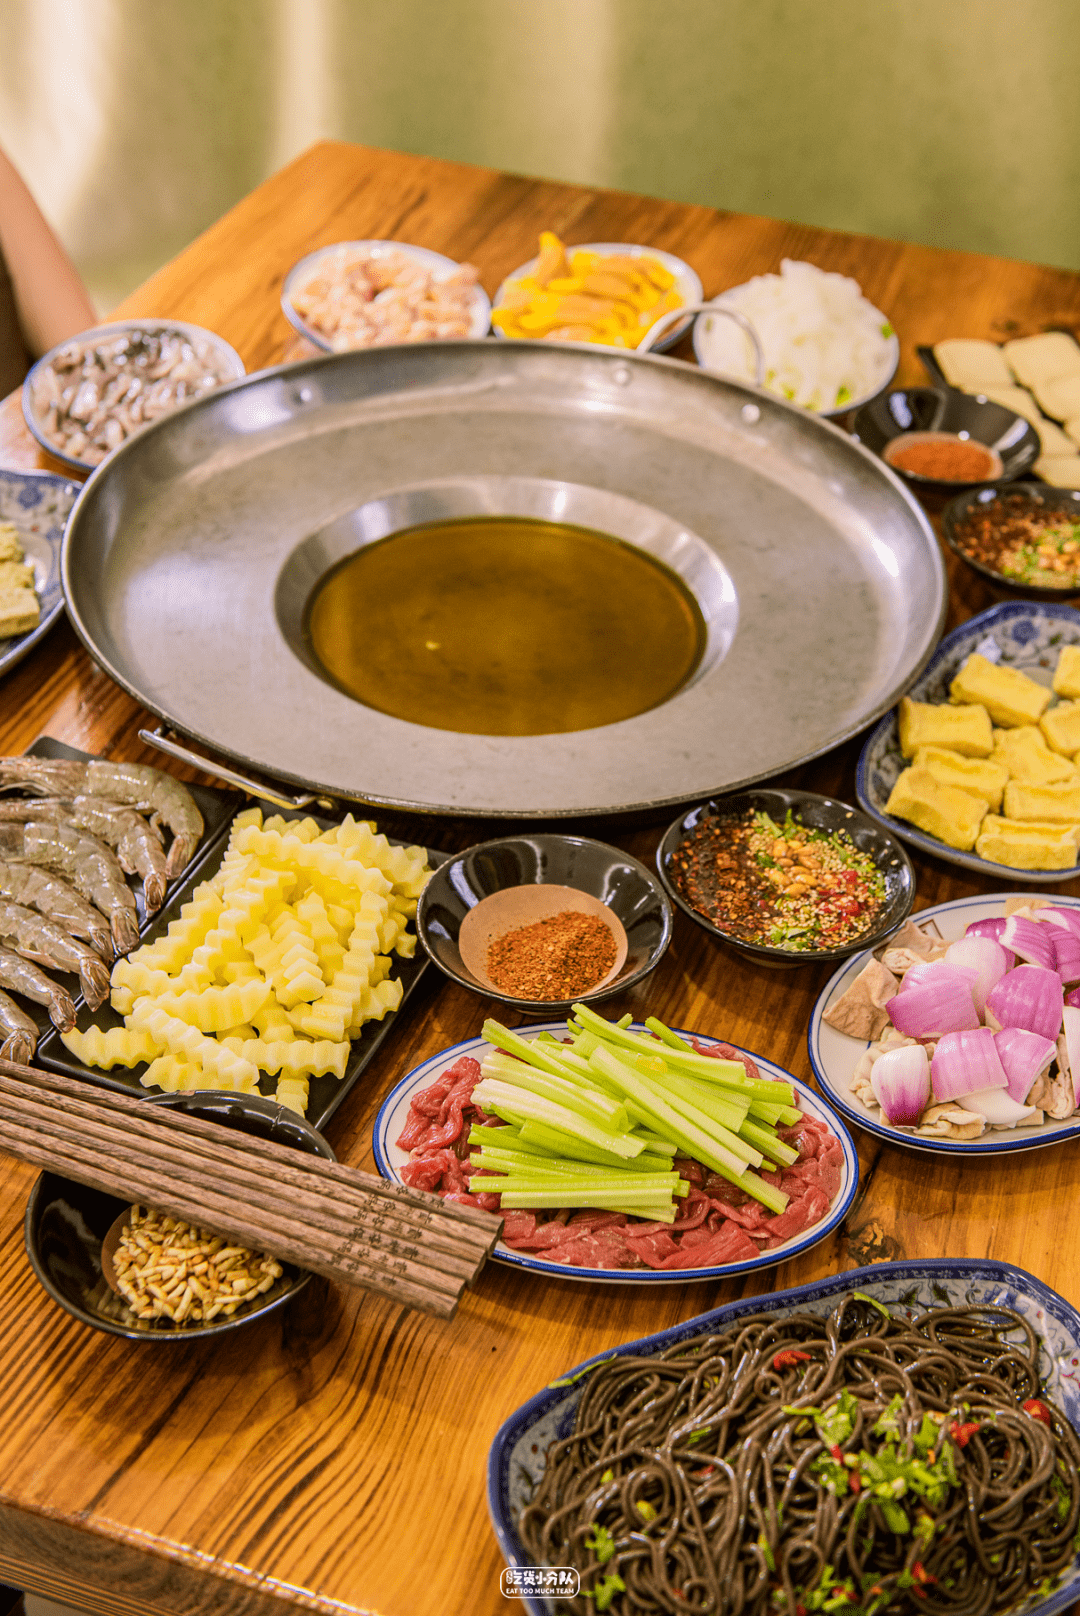 万物皆可「烙」# 6步食用法 #贵州烙锅的食材丰富到看花眼,更是流传着